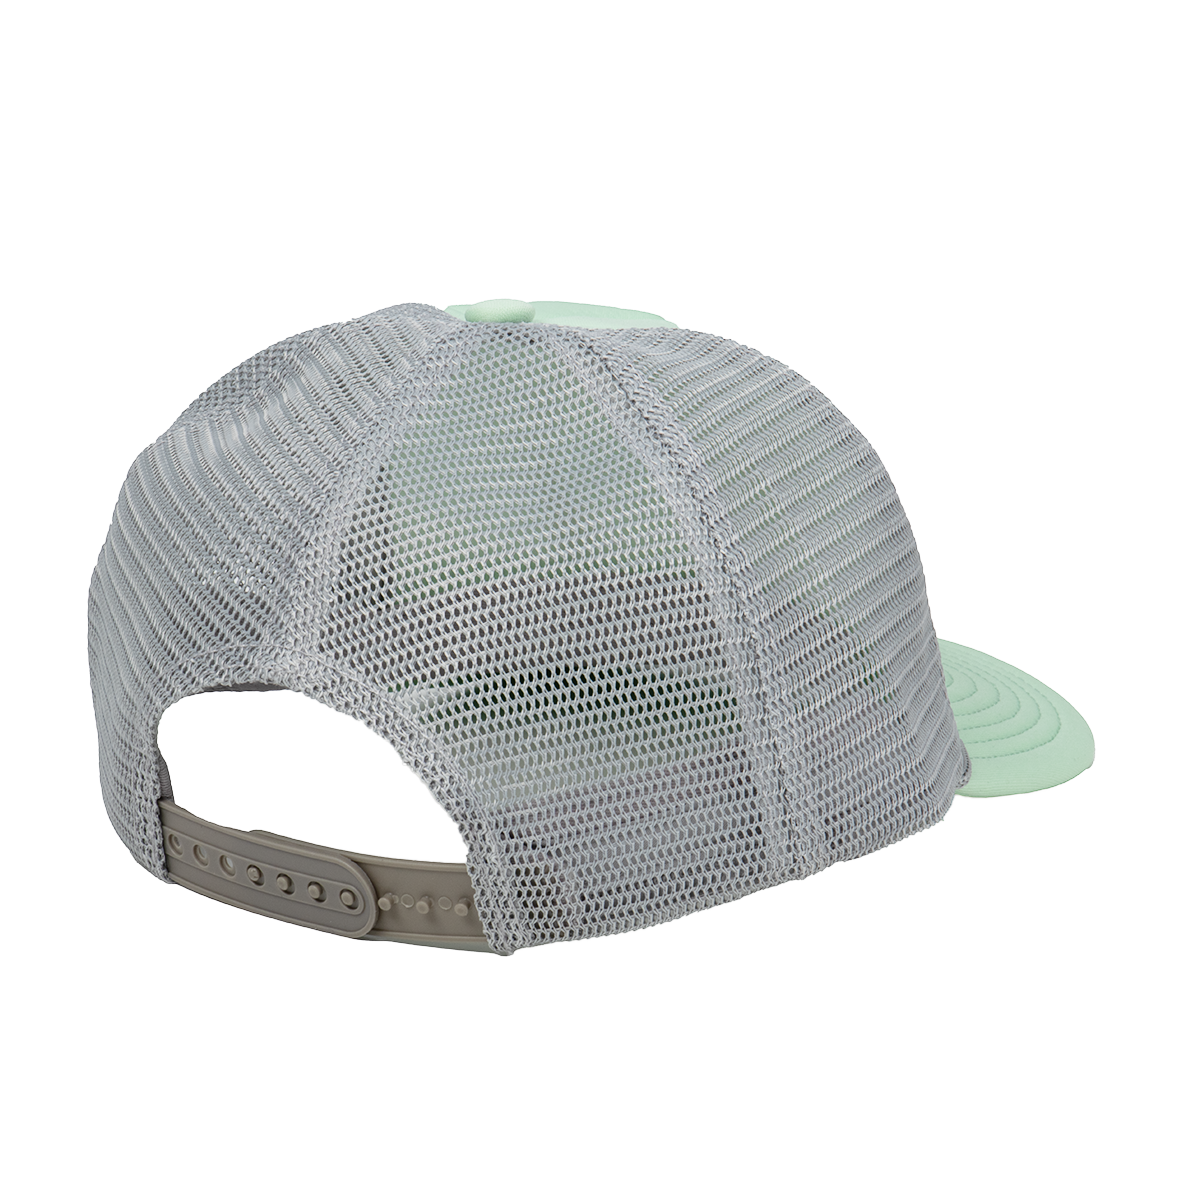 Dandelion Foam Trucker Hat - Mint/Light Gray